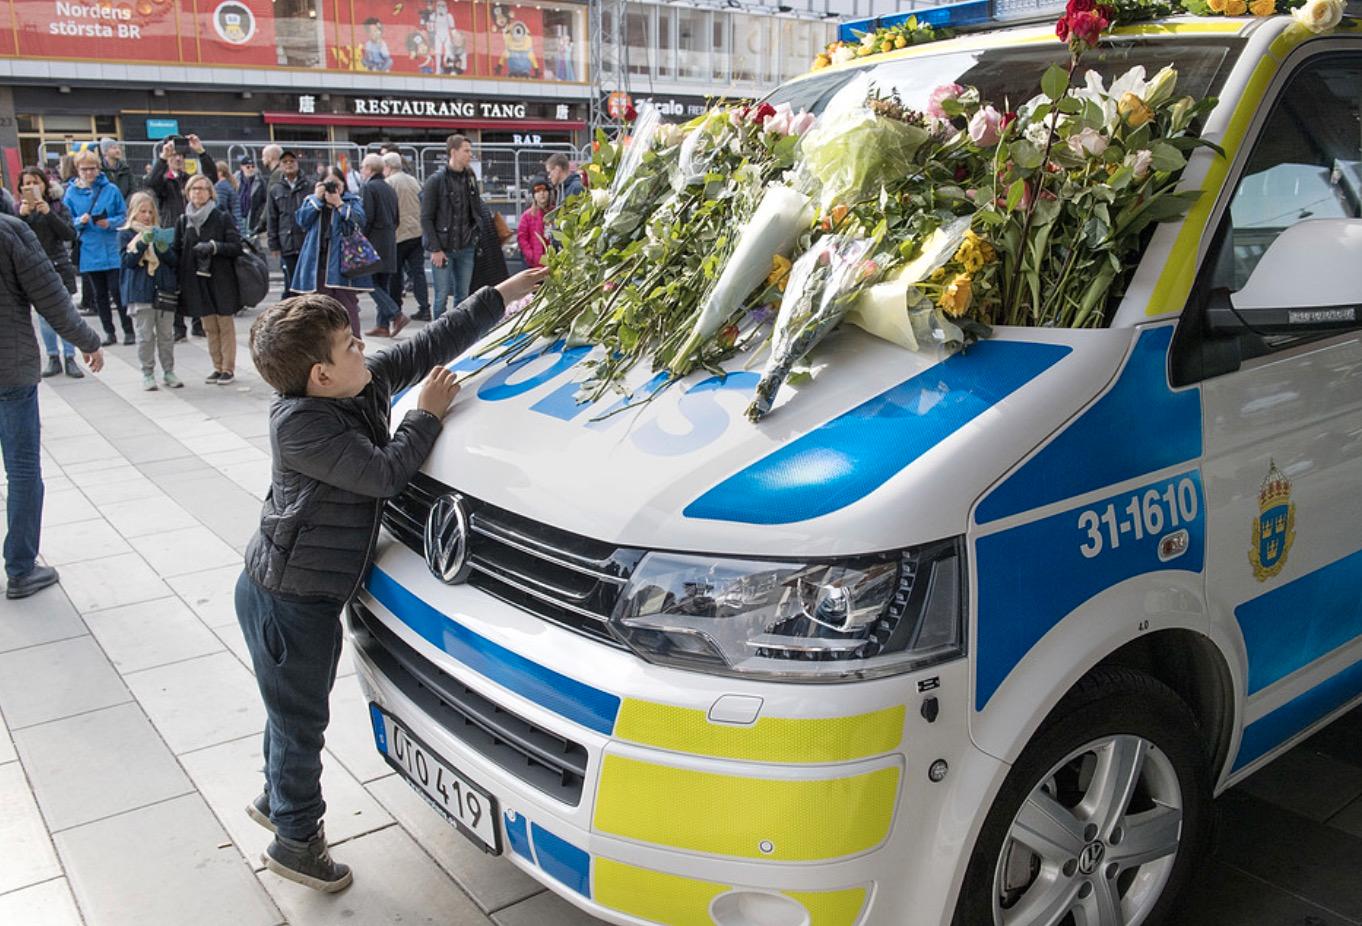 En liten pojke placerar blommor på en polisbil vid Sergels torg i Stockholm.